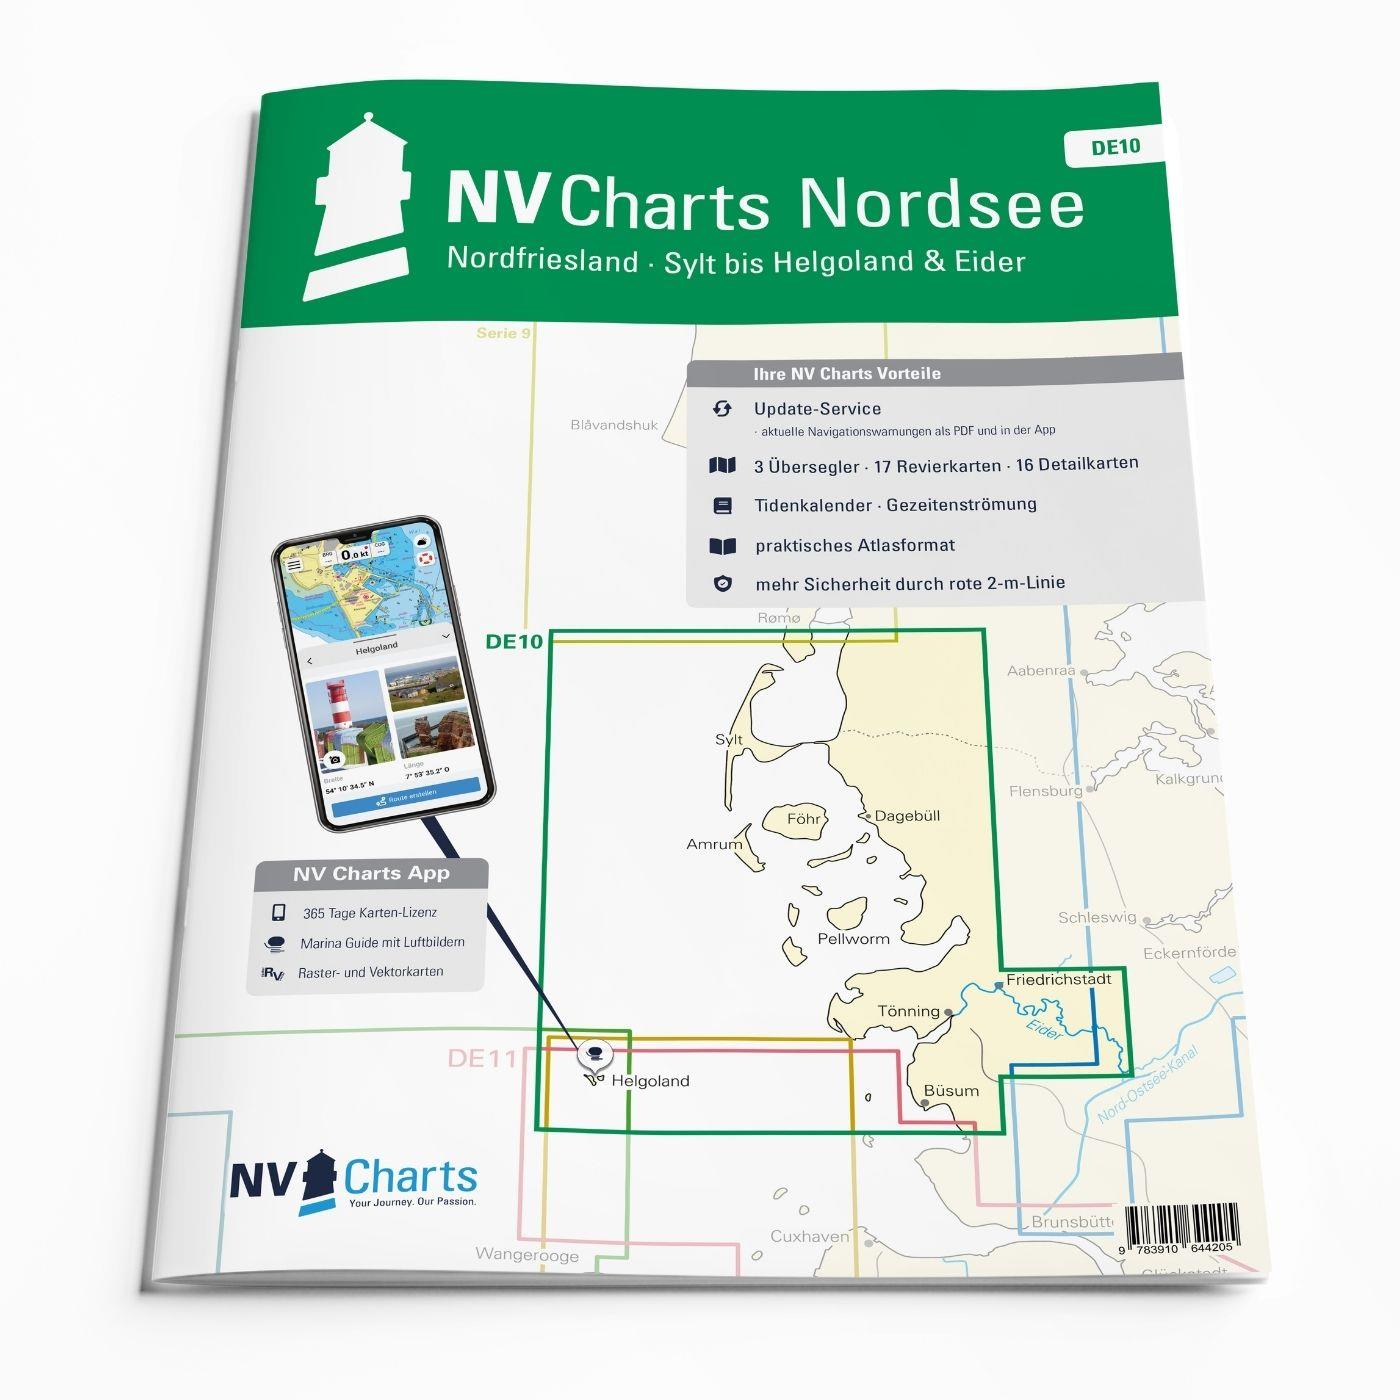 NV Charts Nordsee DE10 - Nordfriesland, Sylt bis Helgoland & Eider